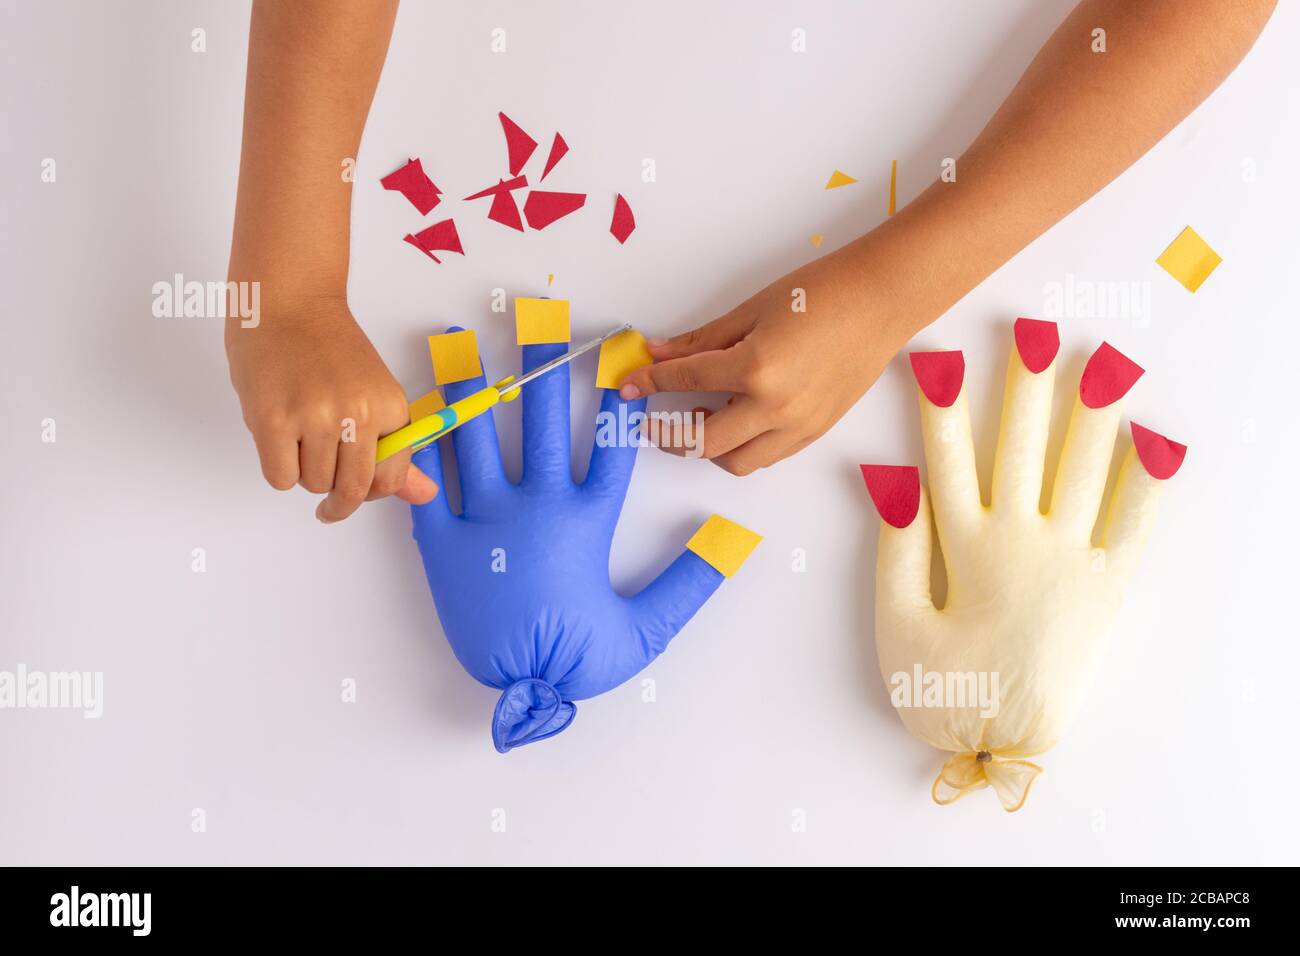 Kinder Hand schneiden Papier künstliche Nägel auf einem Spielzeug, üben  Scheren Fähigkeiten mit einem Spiel, Aktivitäten für Kinder oder Kleinkinder,  kreative Kinder Kunst-Projekt, DIY, Draufsicht Stockfotografie - Alamy